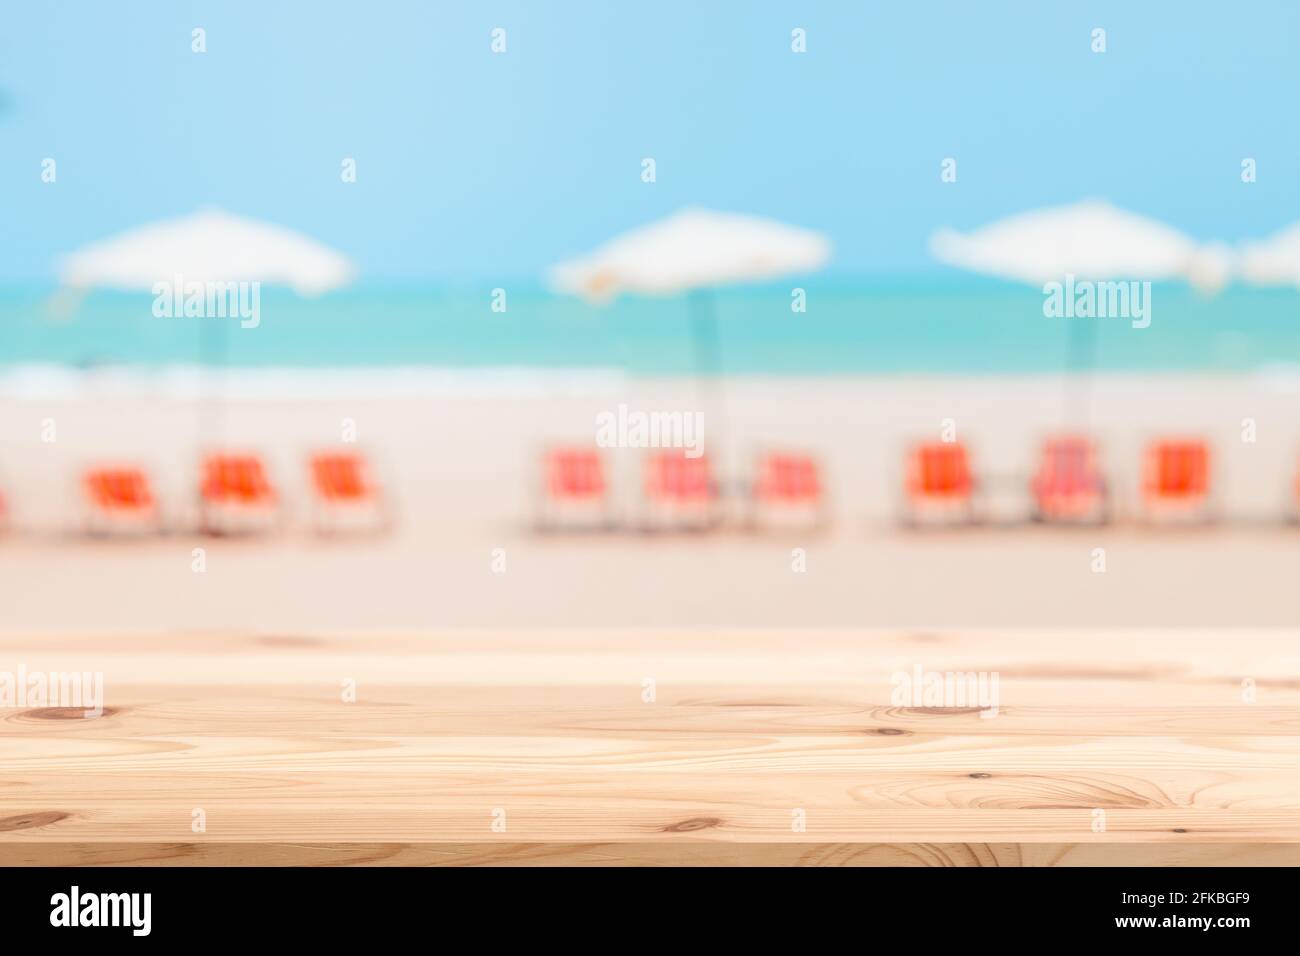 Silla de playa de verano con sombrilla blur con mesa de madera para productos de montaje de fondo espacio publicitario Foto de stock